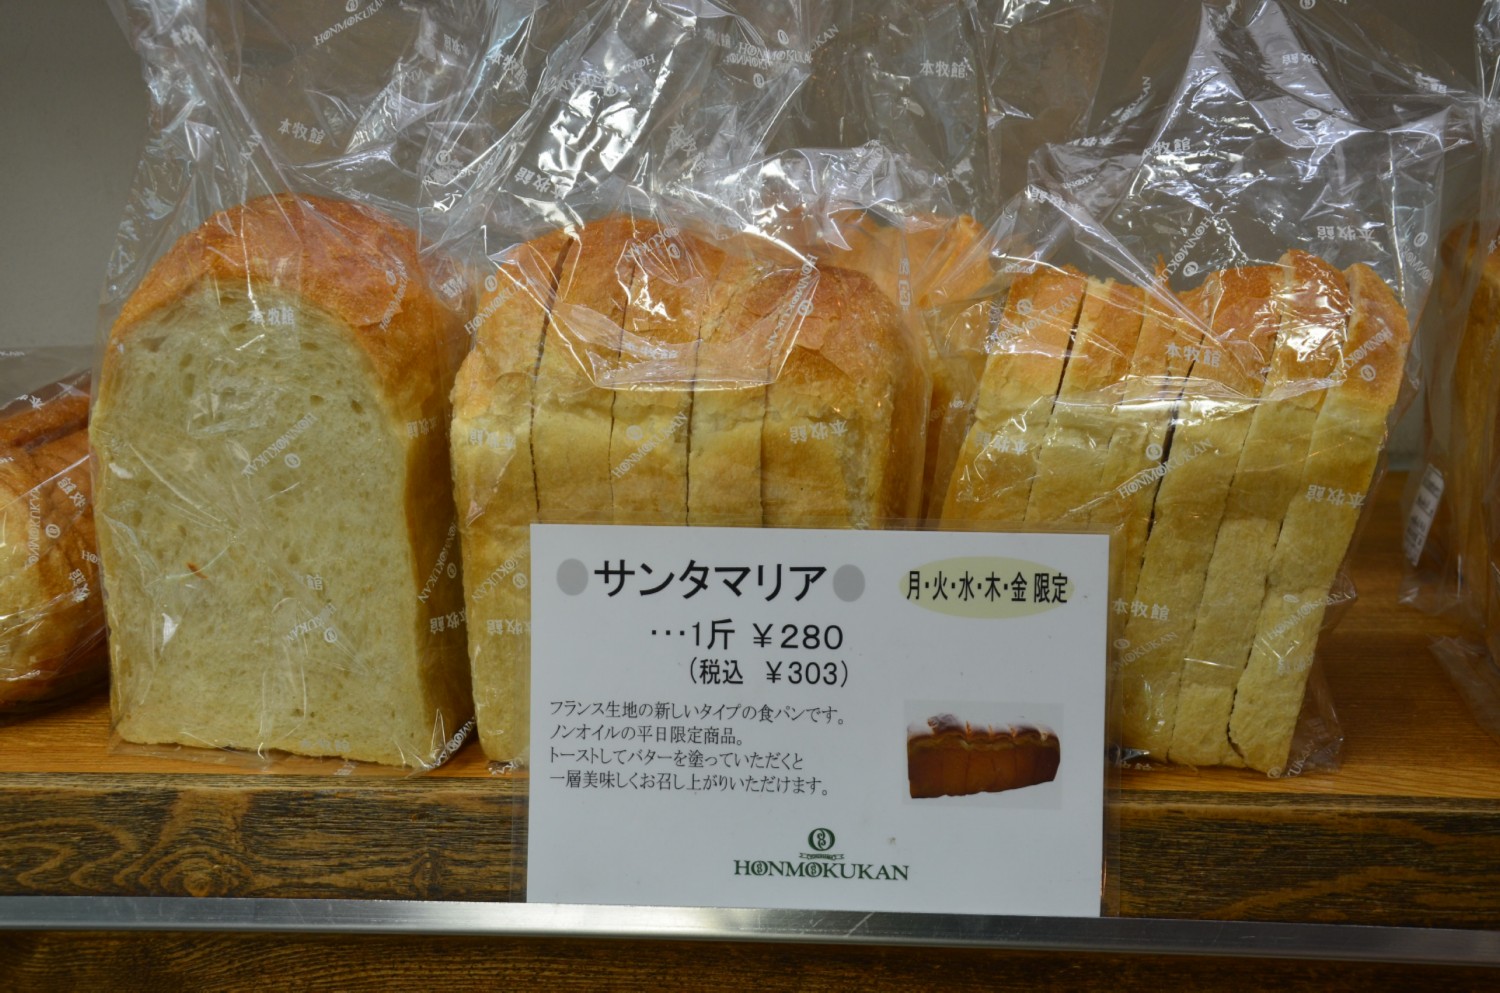 6 szelet kenyer 2.4 Euro